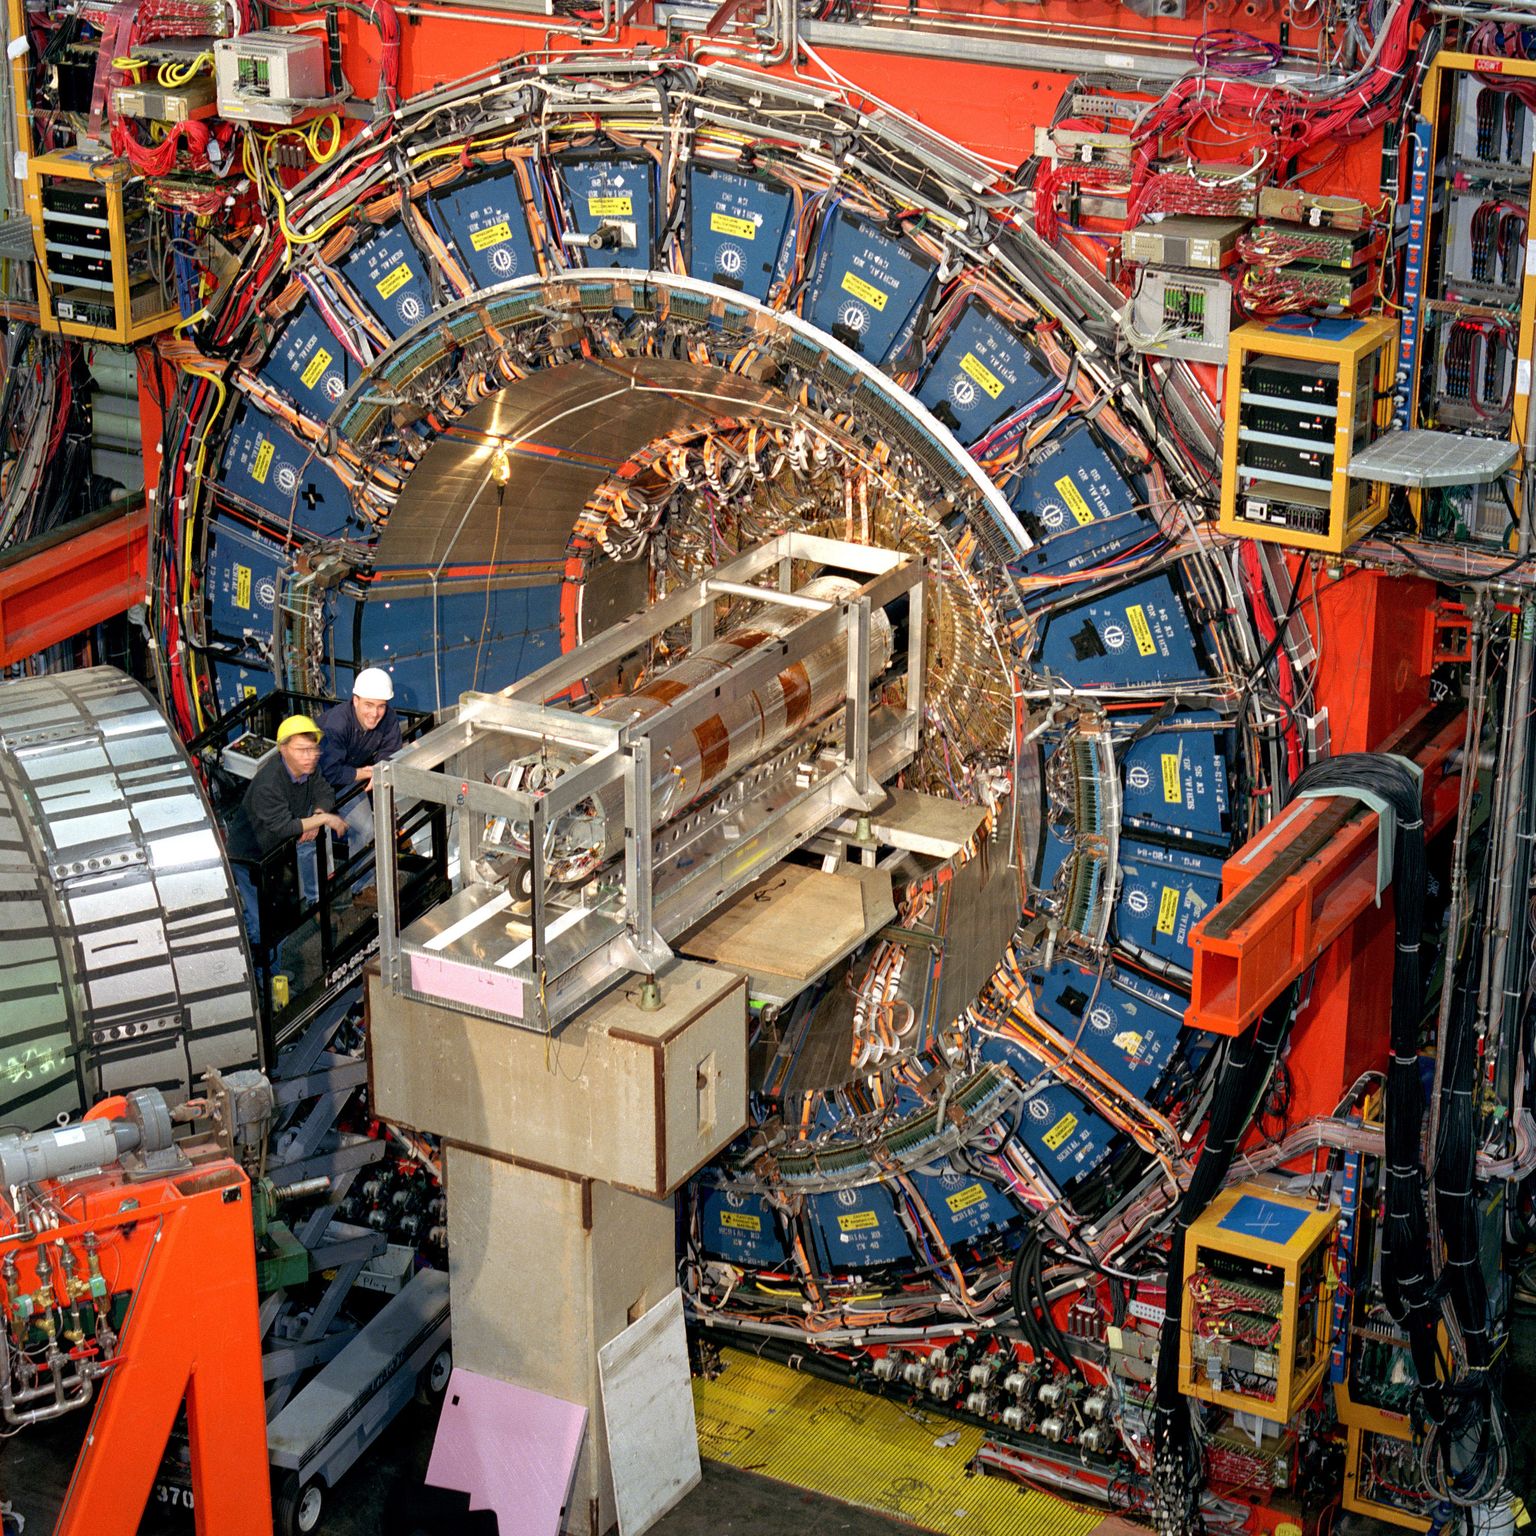 Fermilabis varasemalt tehtud eksperimentide andmete uuesti läbivaatamisel ilmnes, et W bosoni mass võib olla senisest suurem. See aga muudaks füüsikalist maailmapilti ulatuslikumalt, kui 0,1% võrra suurem mass. Pildil Fermilabi kiirendi Illinois' laboris.